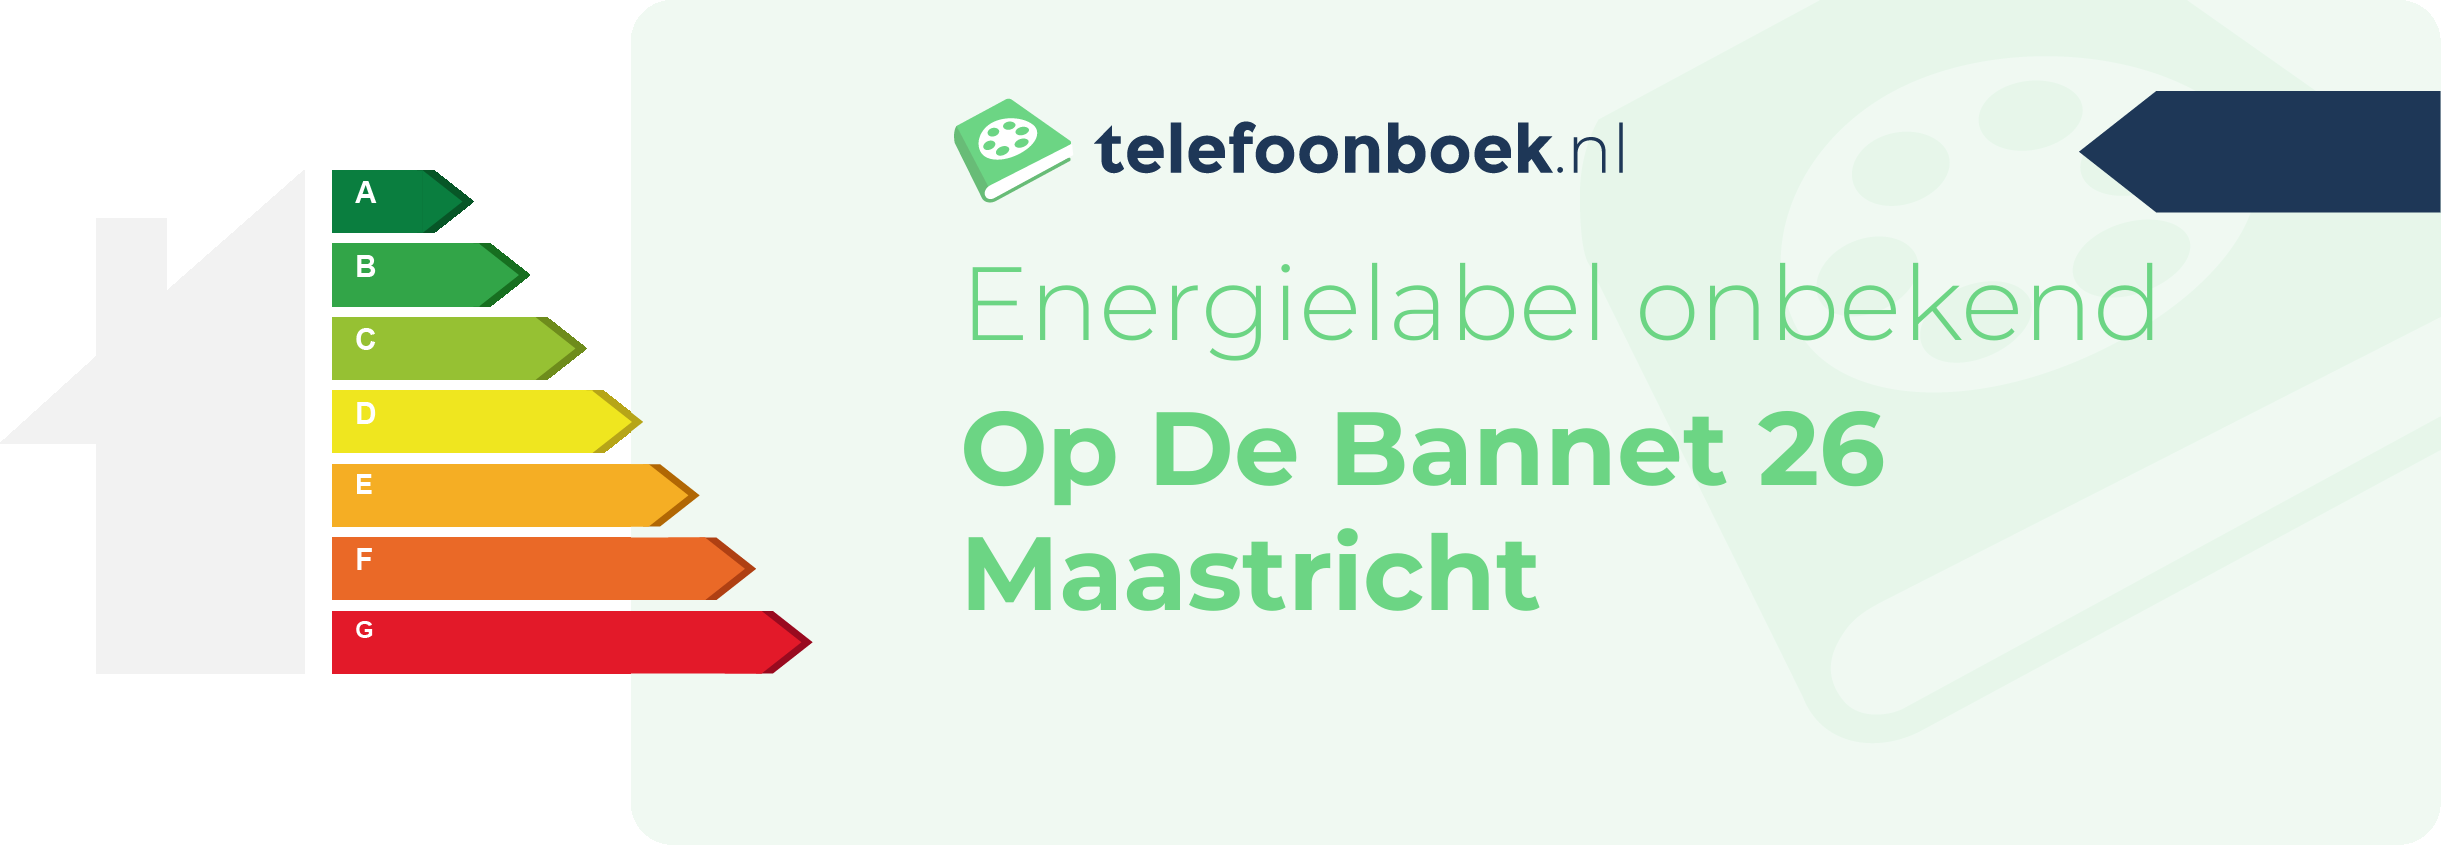 Energielabel Op De Bannet 26 Maastricht